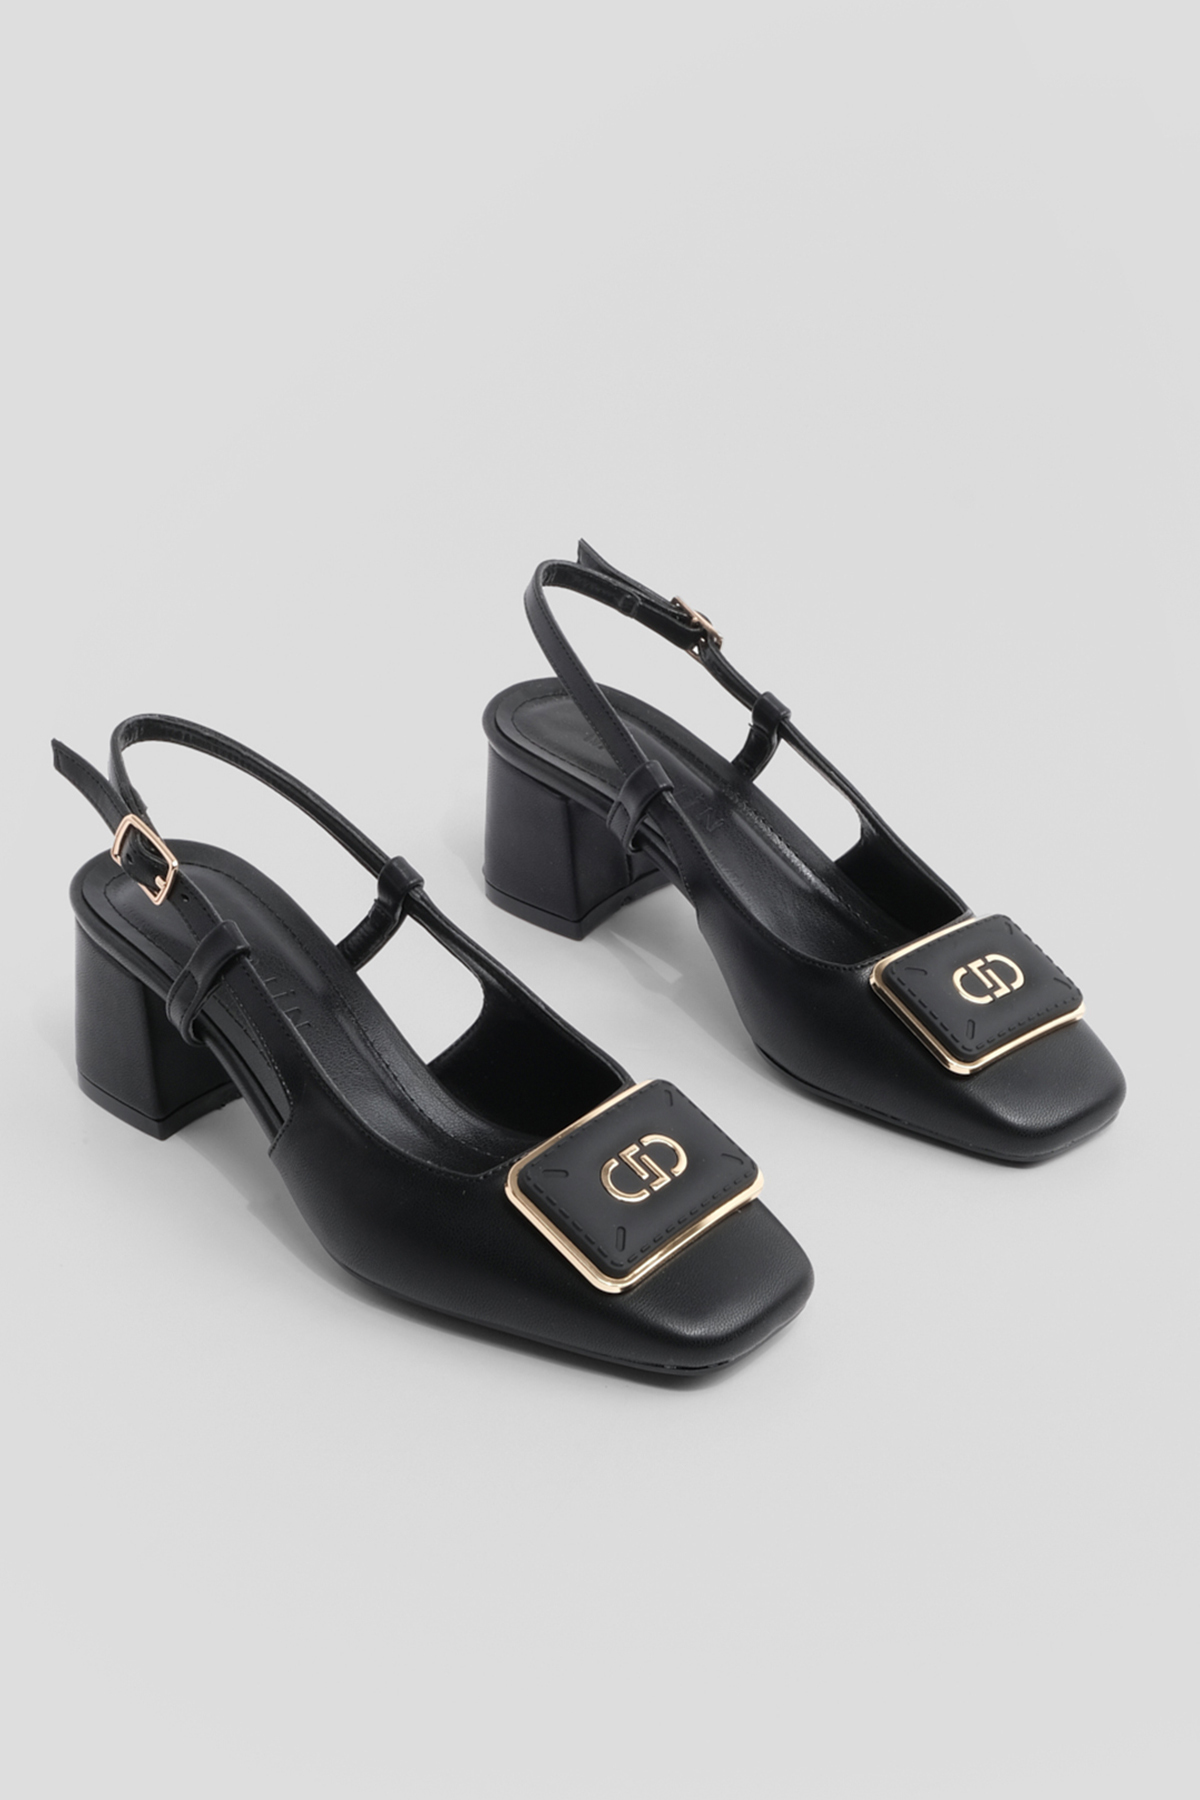 Marjin Women's Buckled Open Back Scarf Flat Toe Classic Heeled Shoes Black